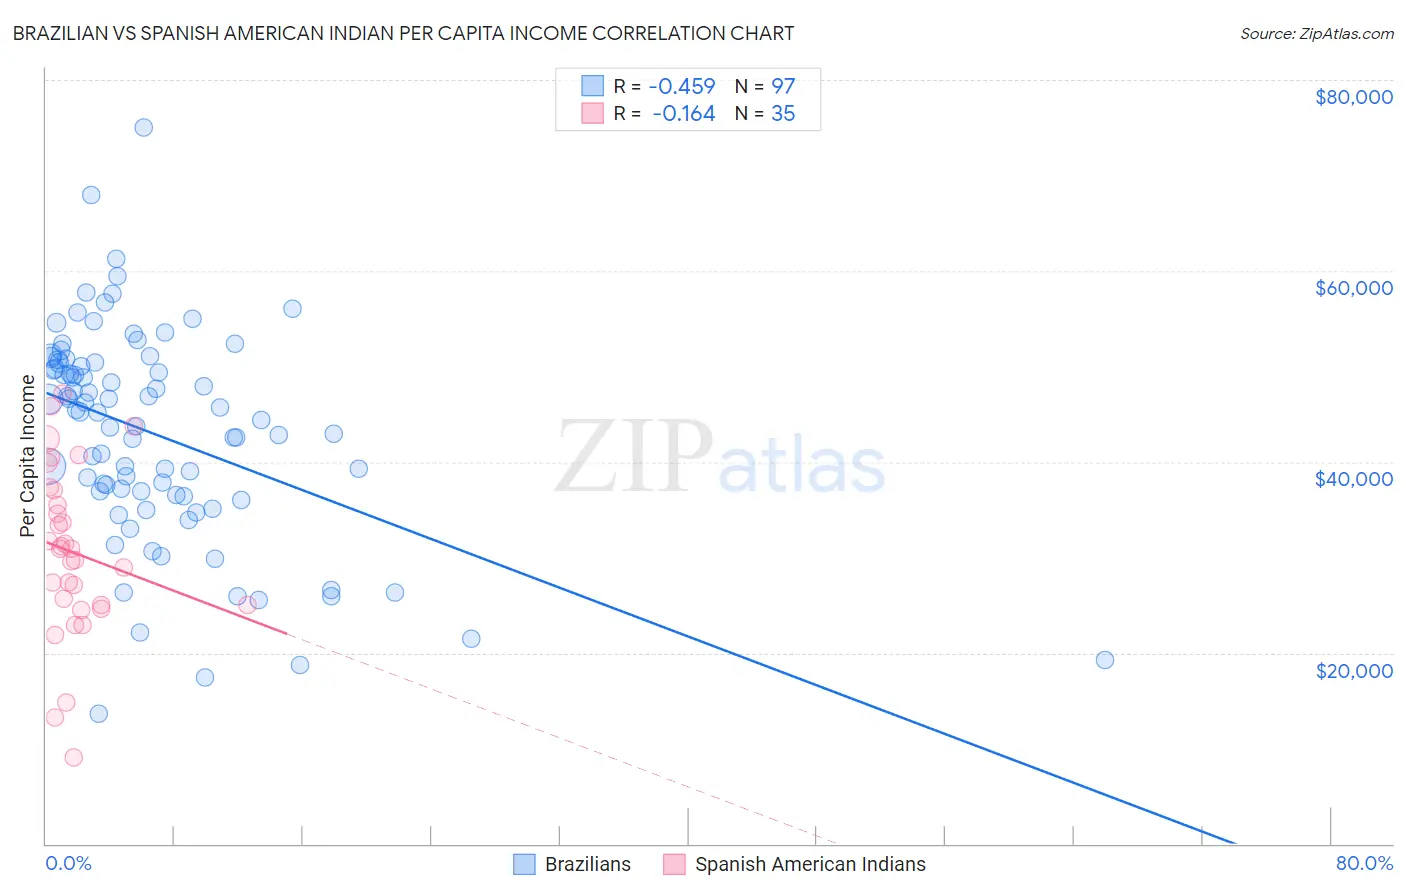 Brazilian vs Spanish American Indian Per Capita Income